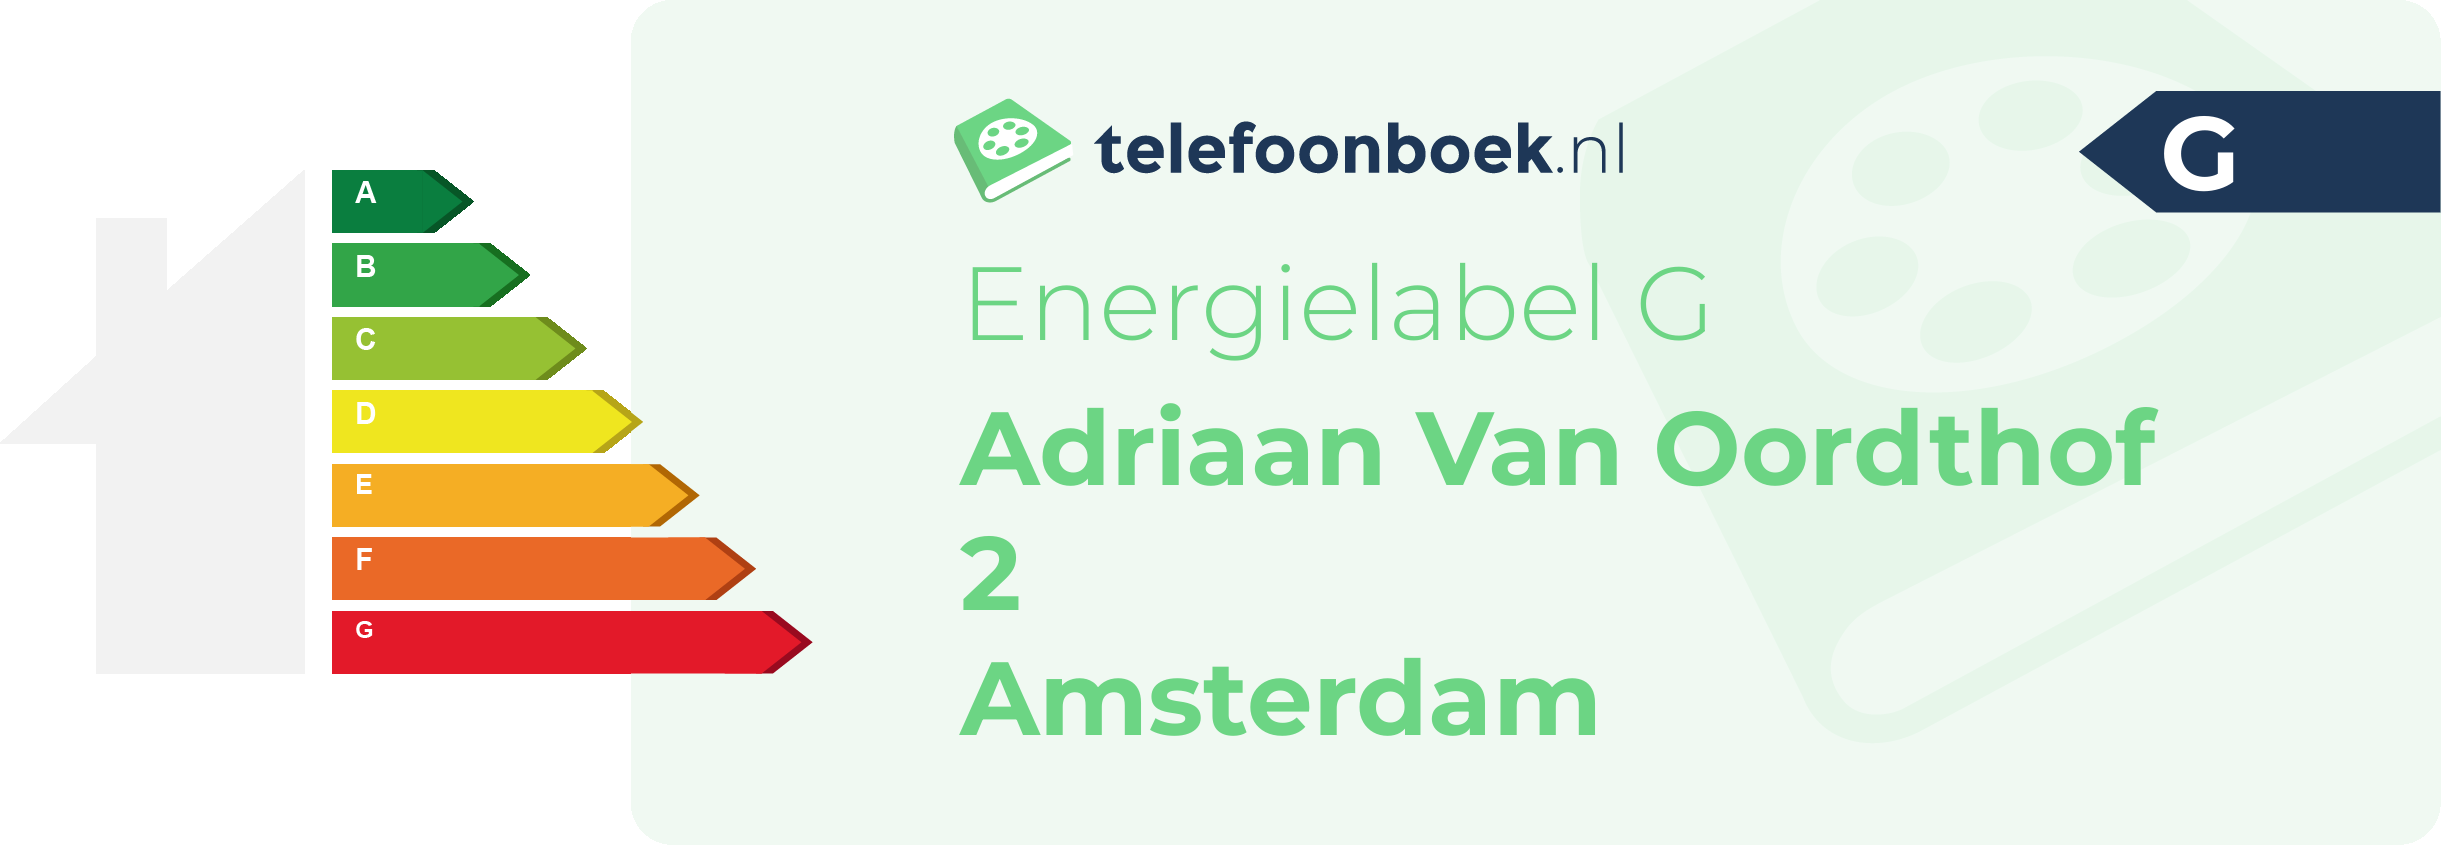 Energielabel Adriaan Van Oordthof 2 Amsterdam